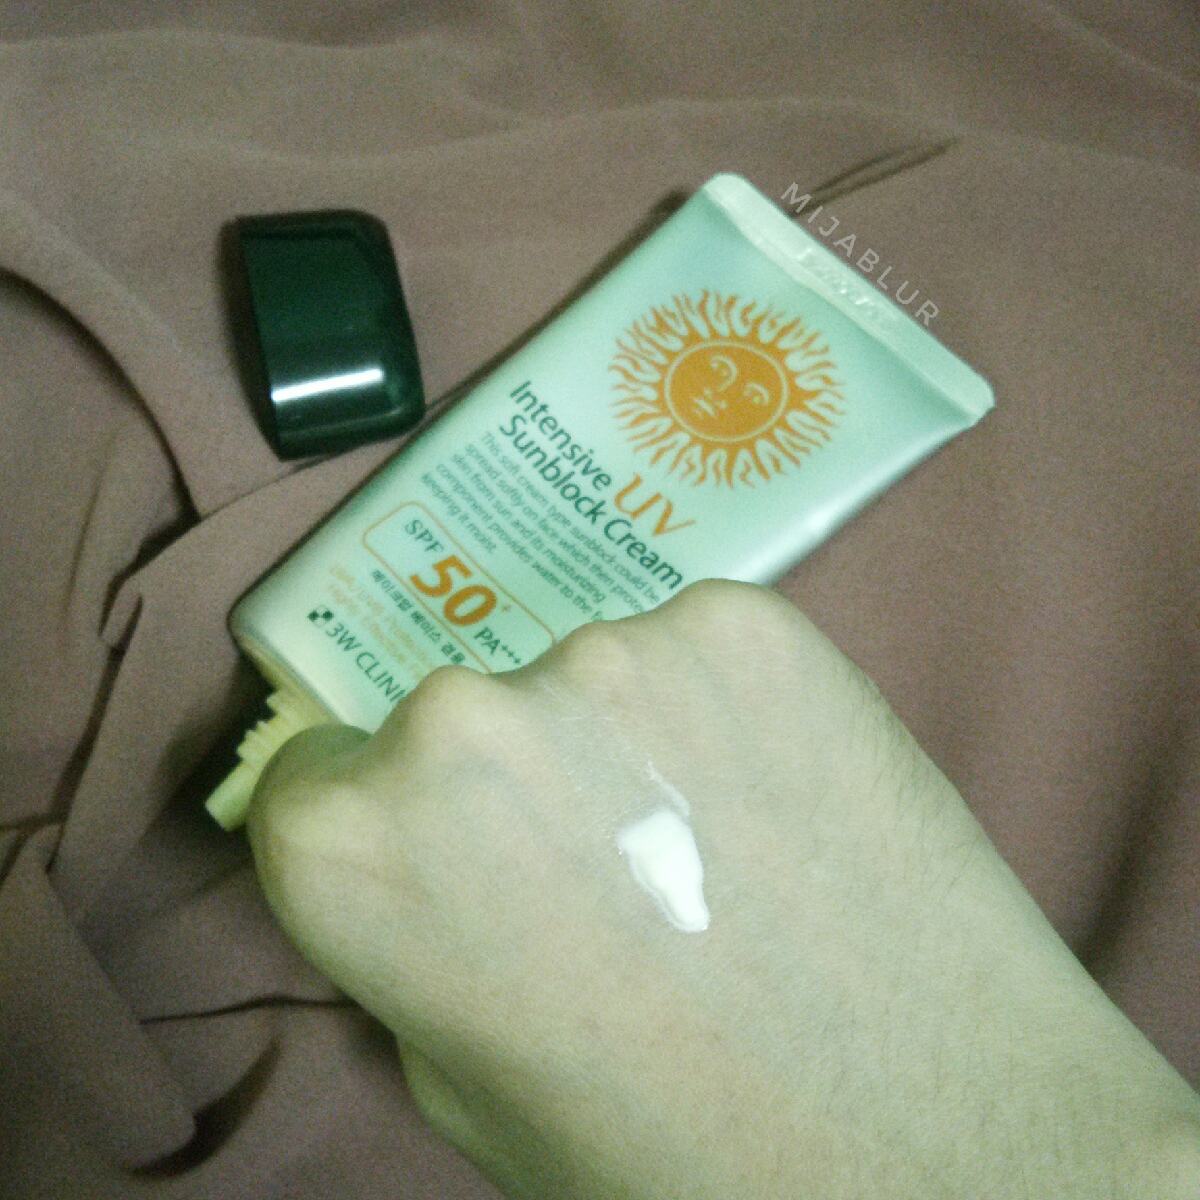 3W Clinic Intensive UV Sunblock Cream 